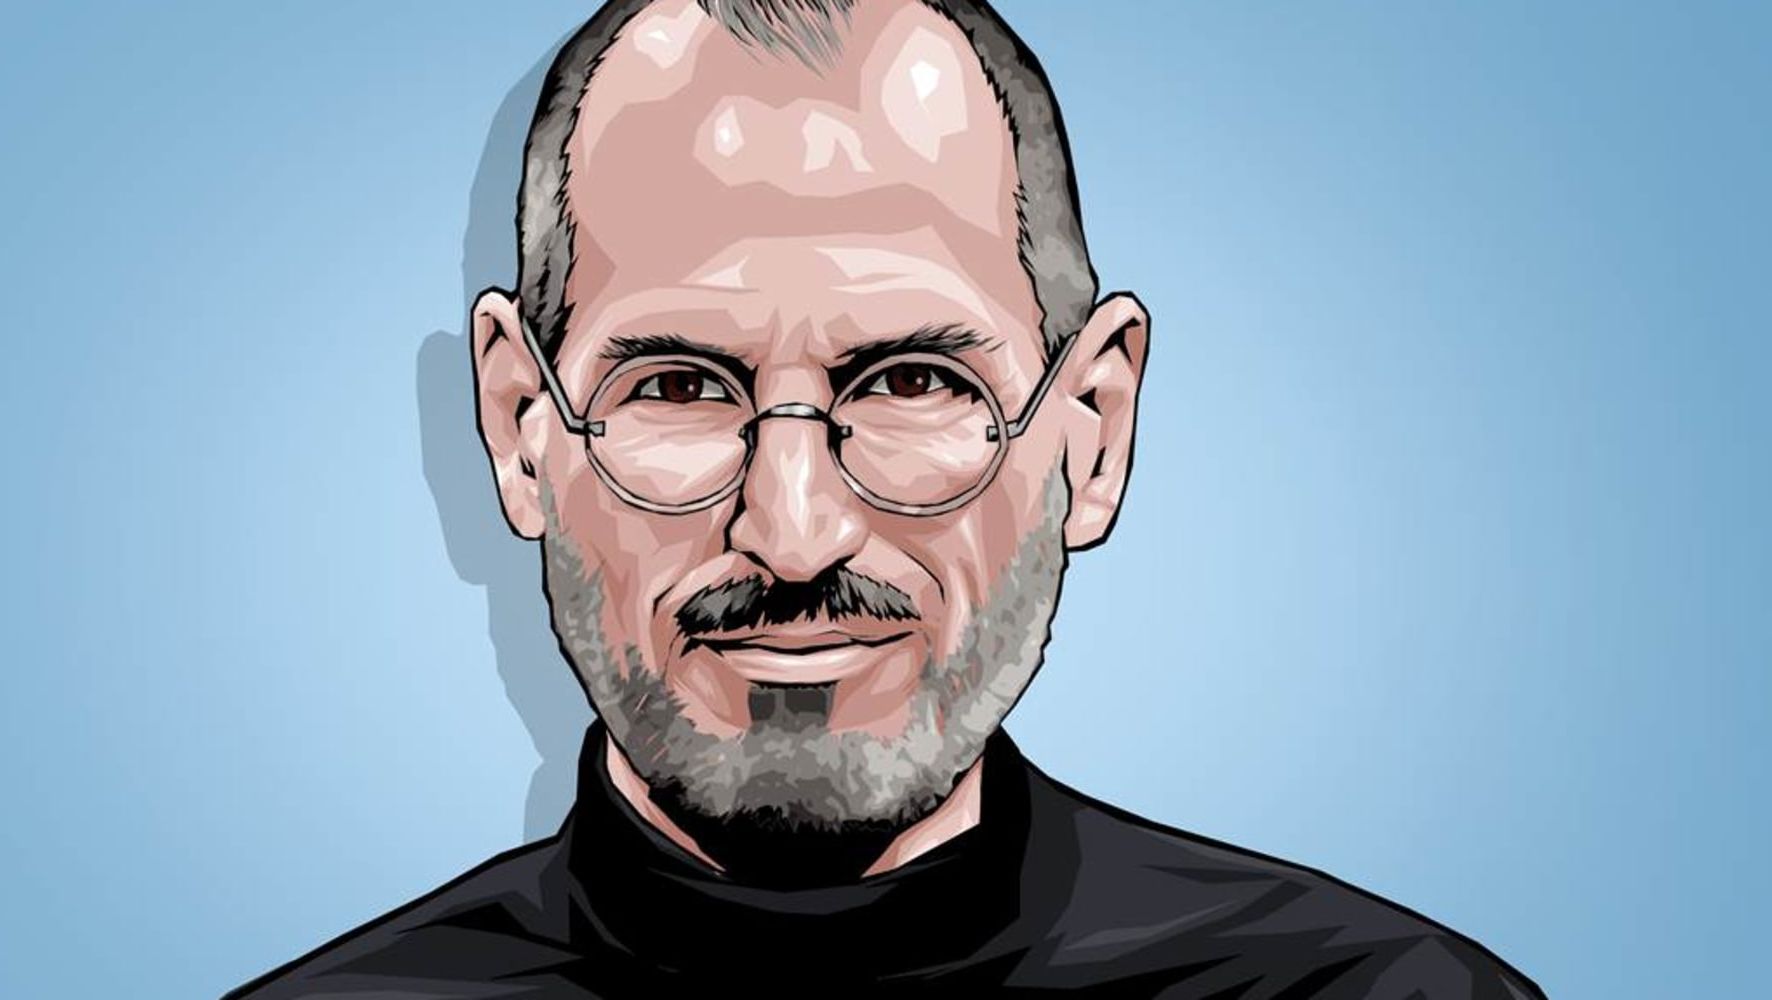 Steve Jobs forstod hvorfor design er viktig – gjør du?